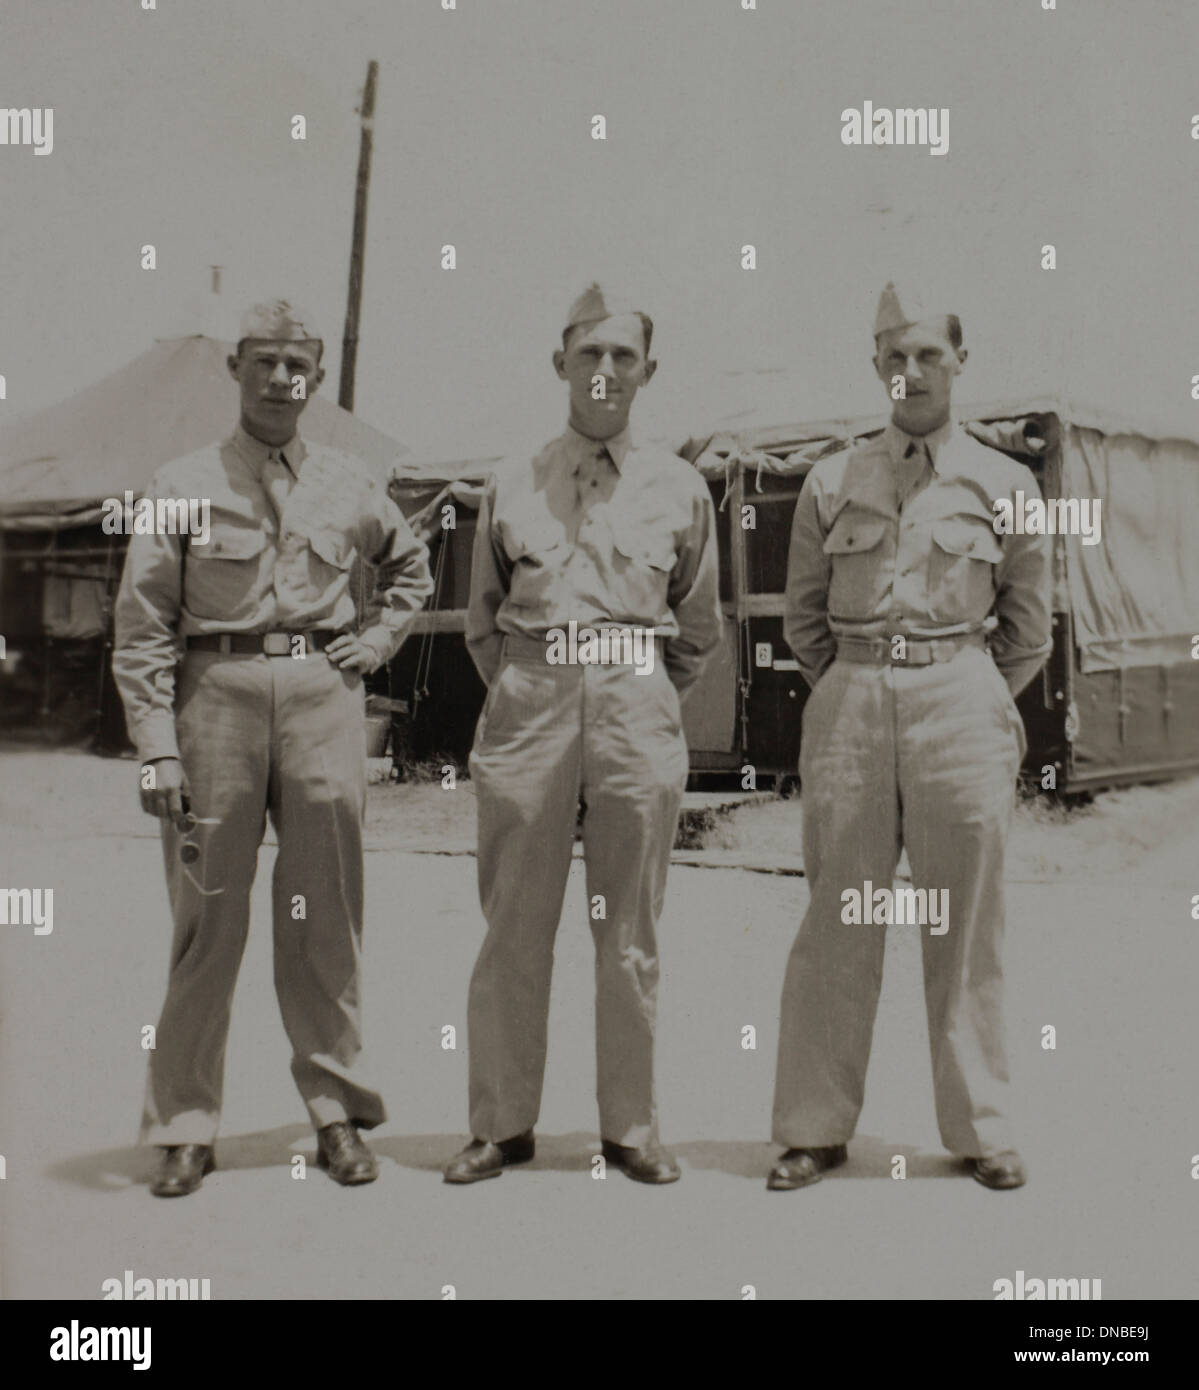 Tre soldati in uniforme, ritratto, durante la seconda guerra mondiale, 325fanteria, US Army base militare , Camp Claiborne, Louisiana, USA, 1942 Foto Stock